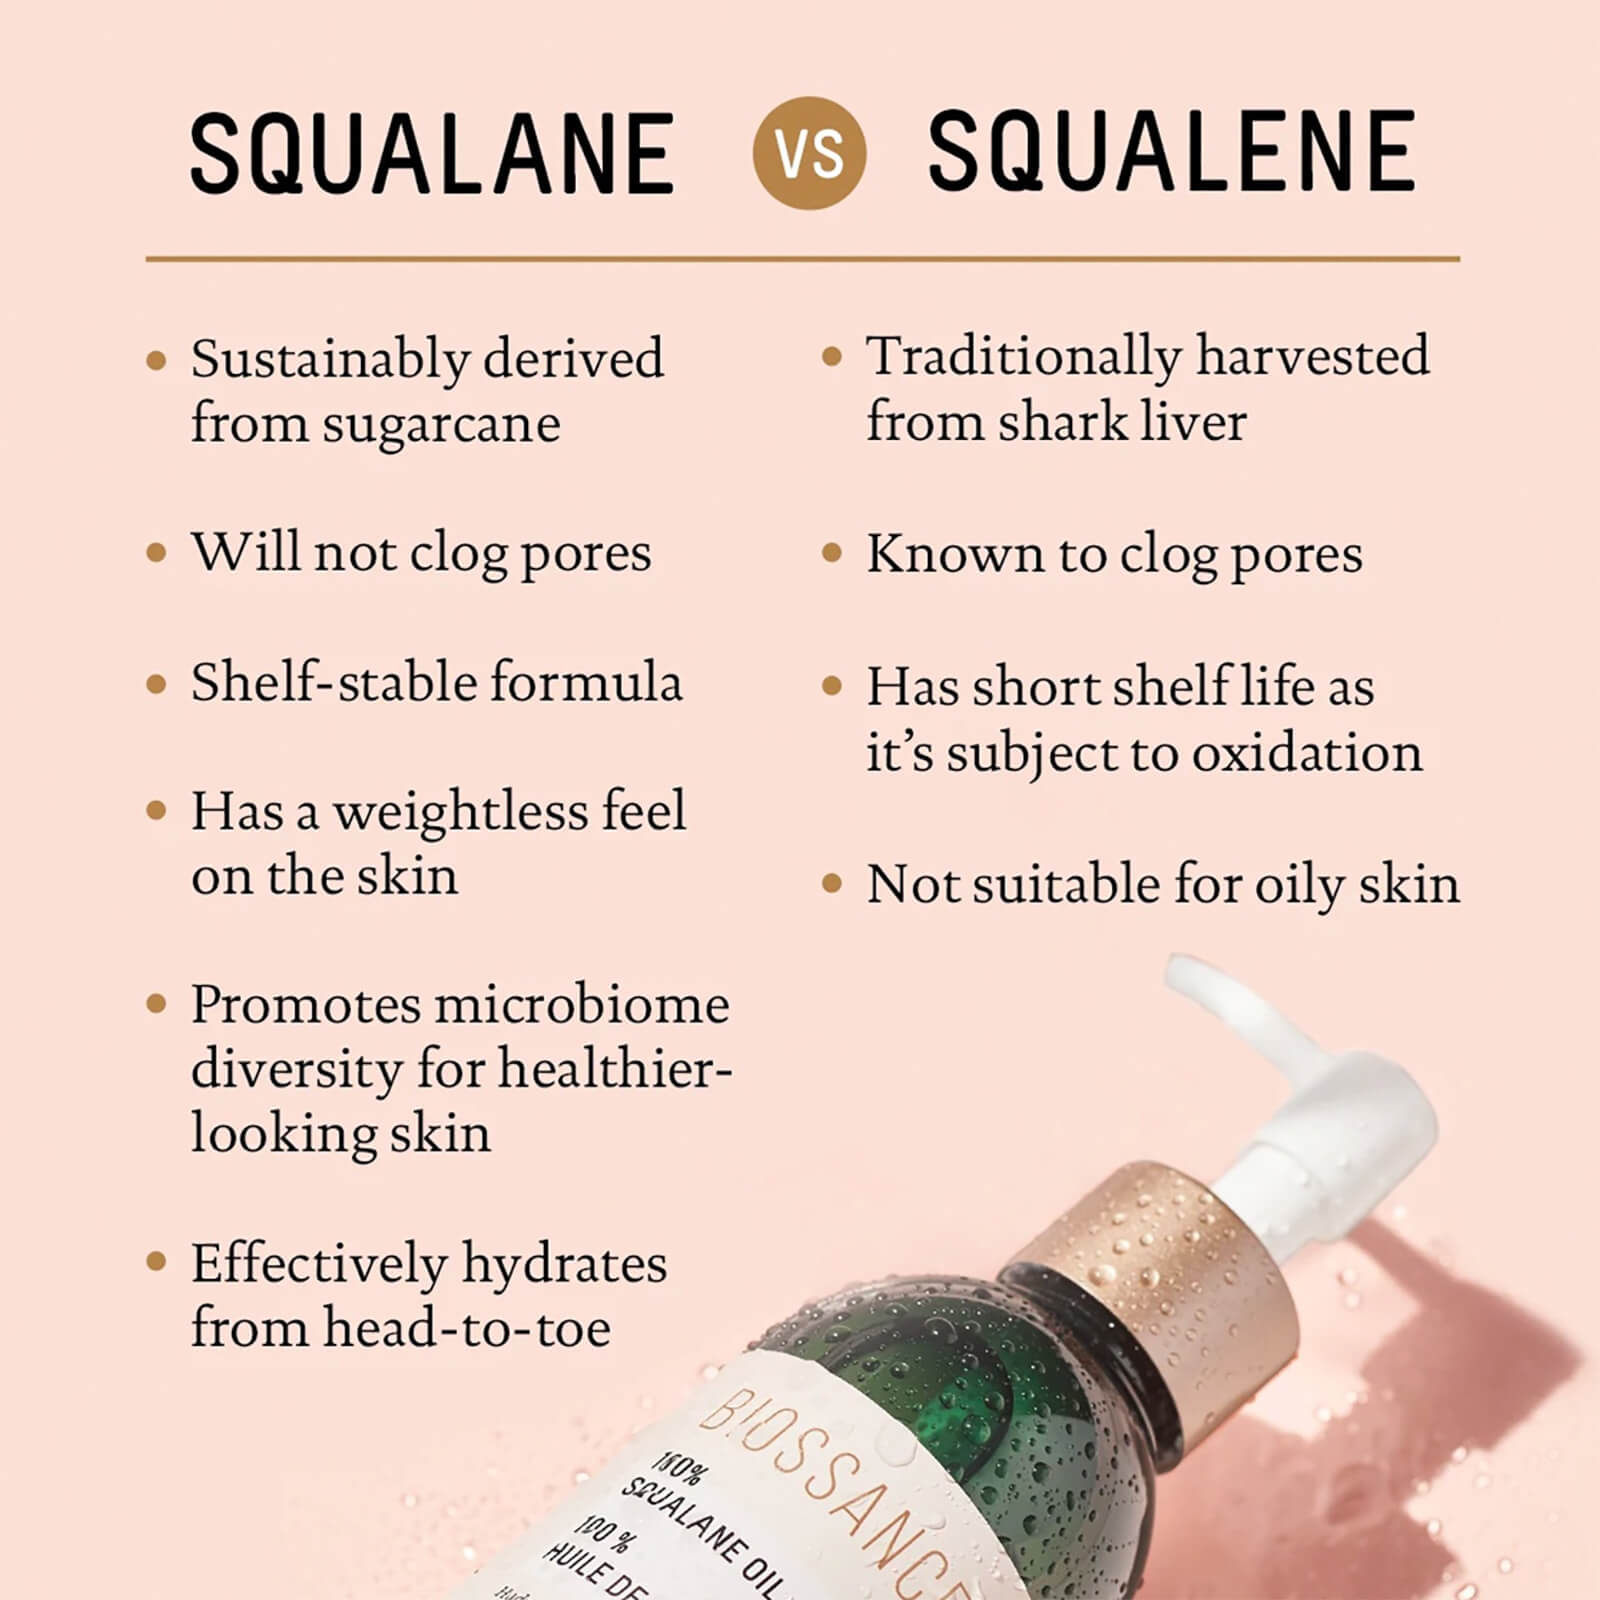 Squalane vs Squalene comparison